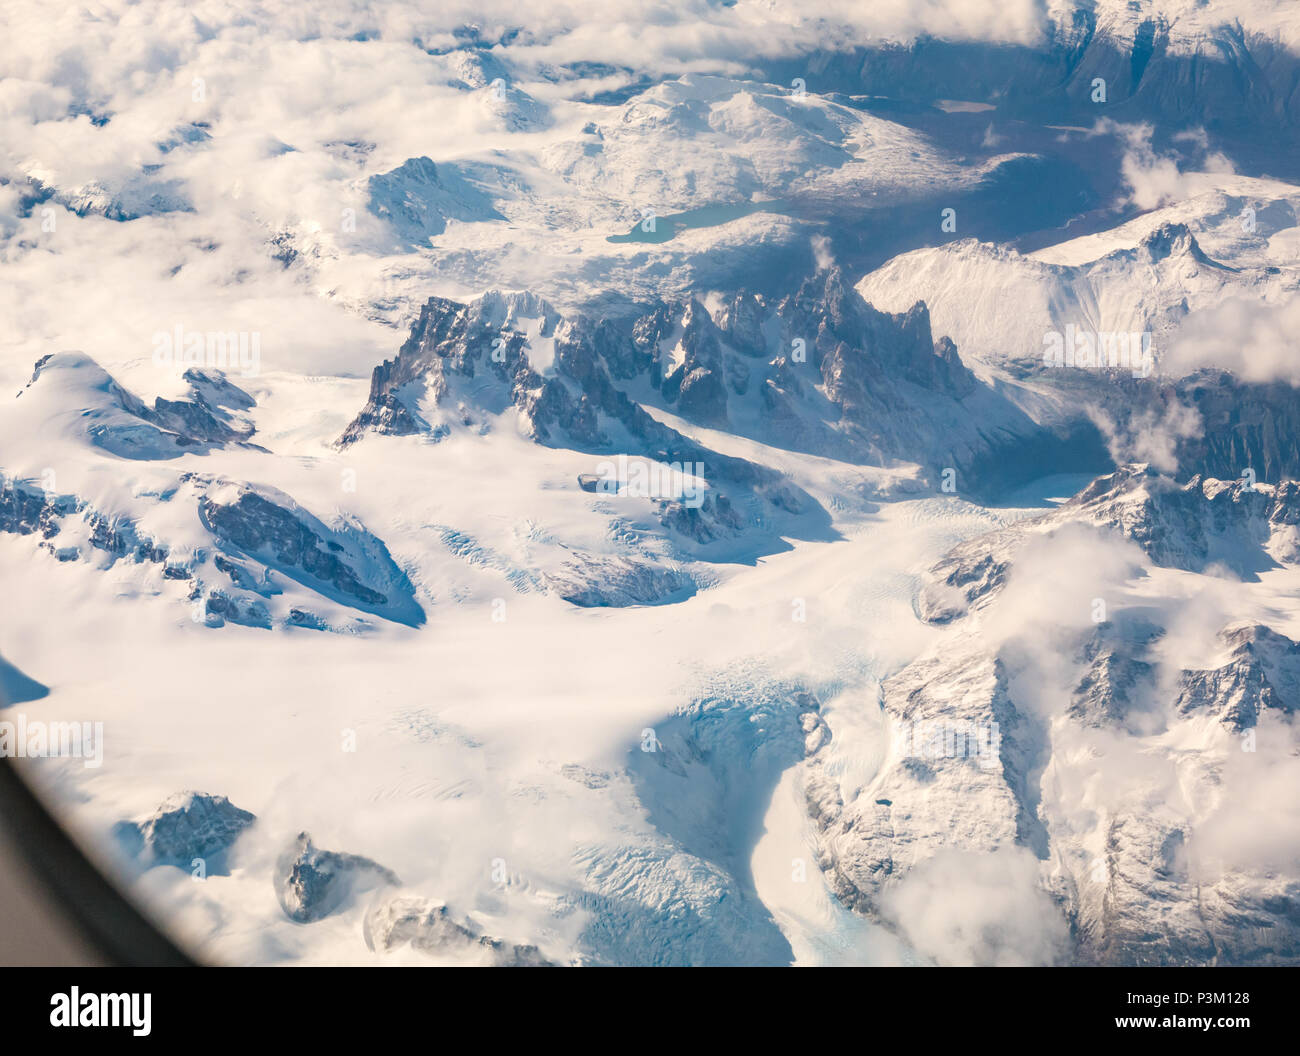 Vue depuis la fenêtre de l'avion de la neige a couvert de montagnes des Andes avec des pics, des glaciers de Patagonie australe champ de glace, Patagonie, Chili, Amérique du Sud Banque D'Images